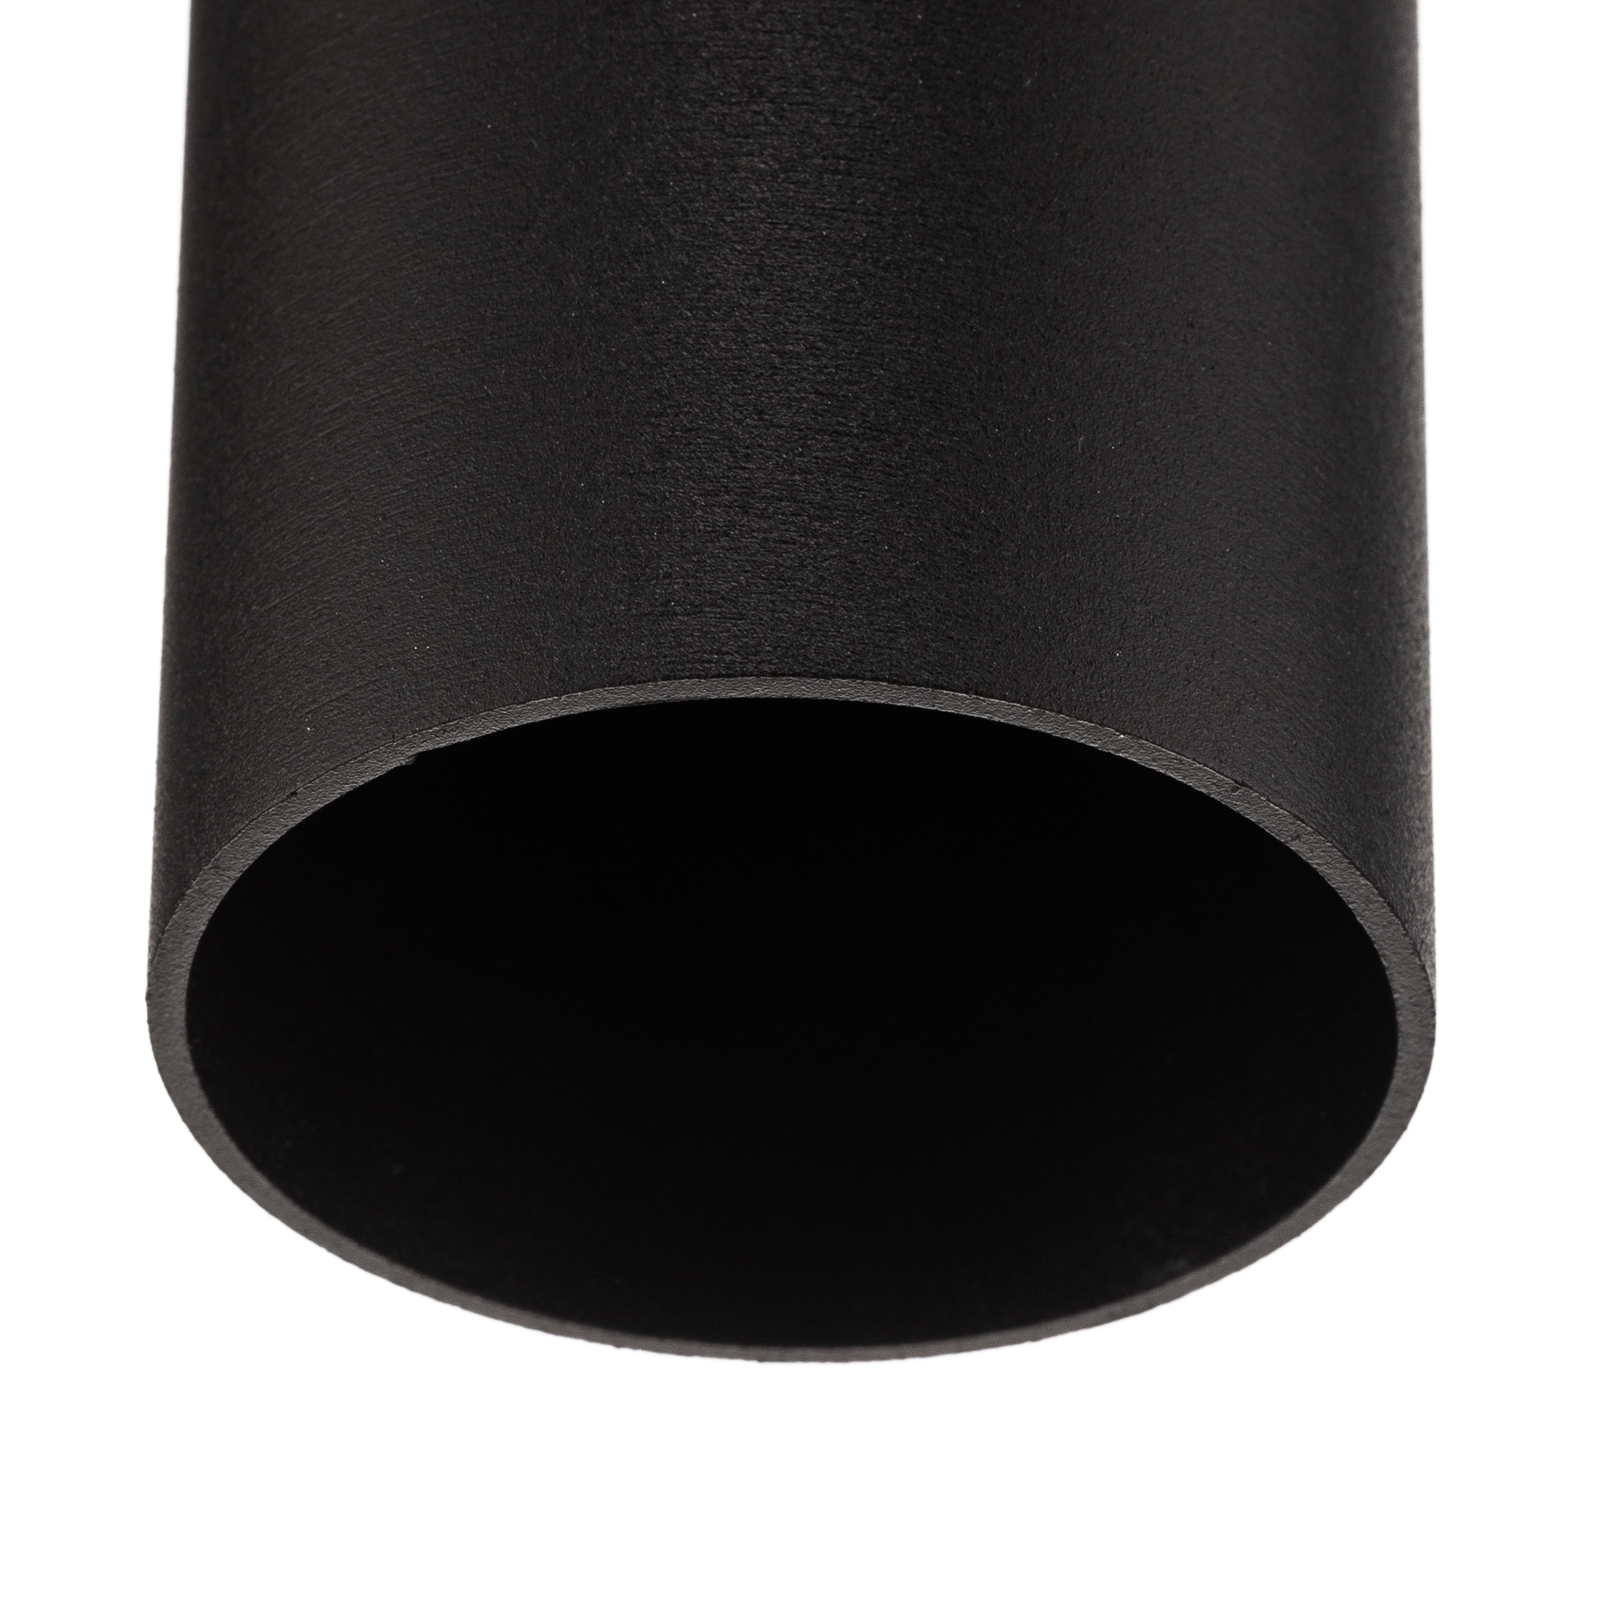 Lampa sufitowa Tube w kształcie walca, czarna